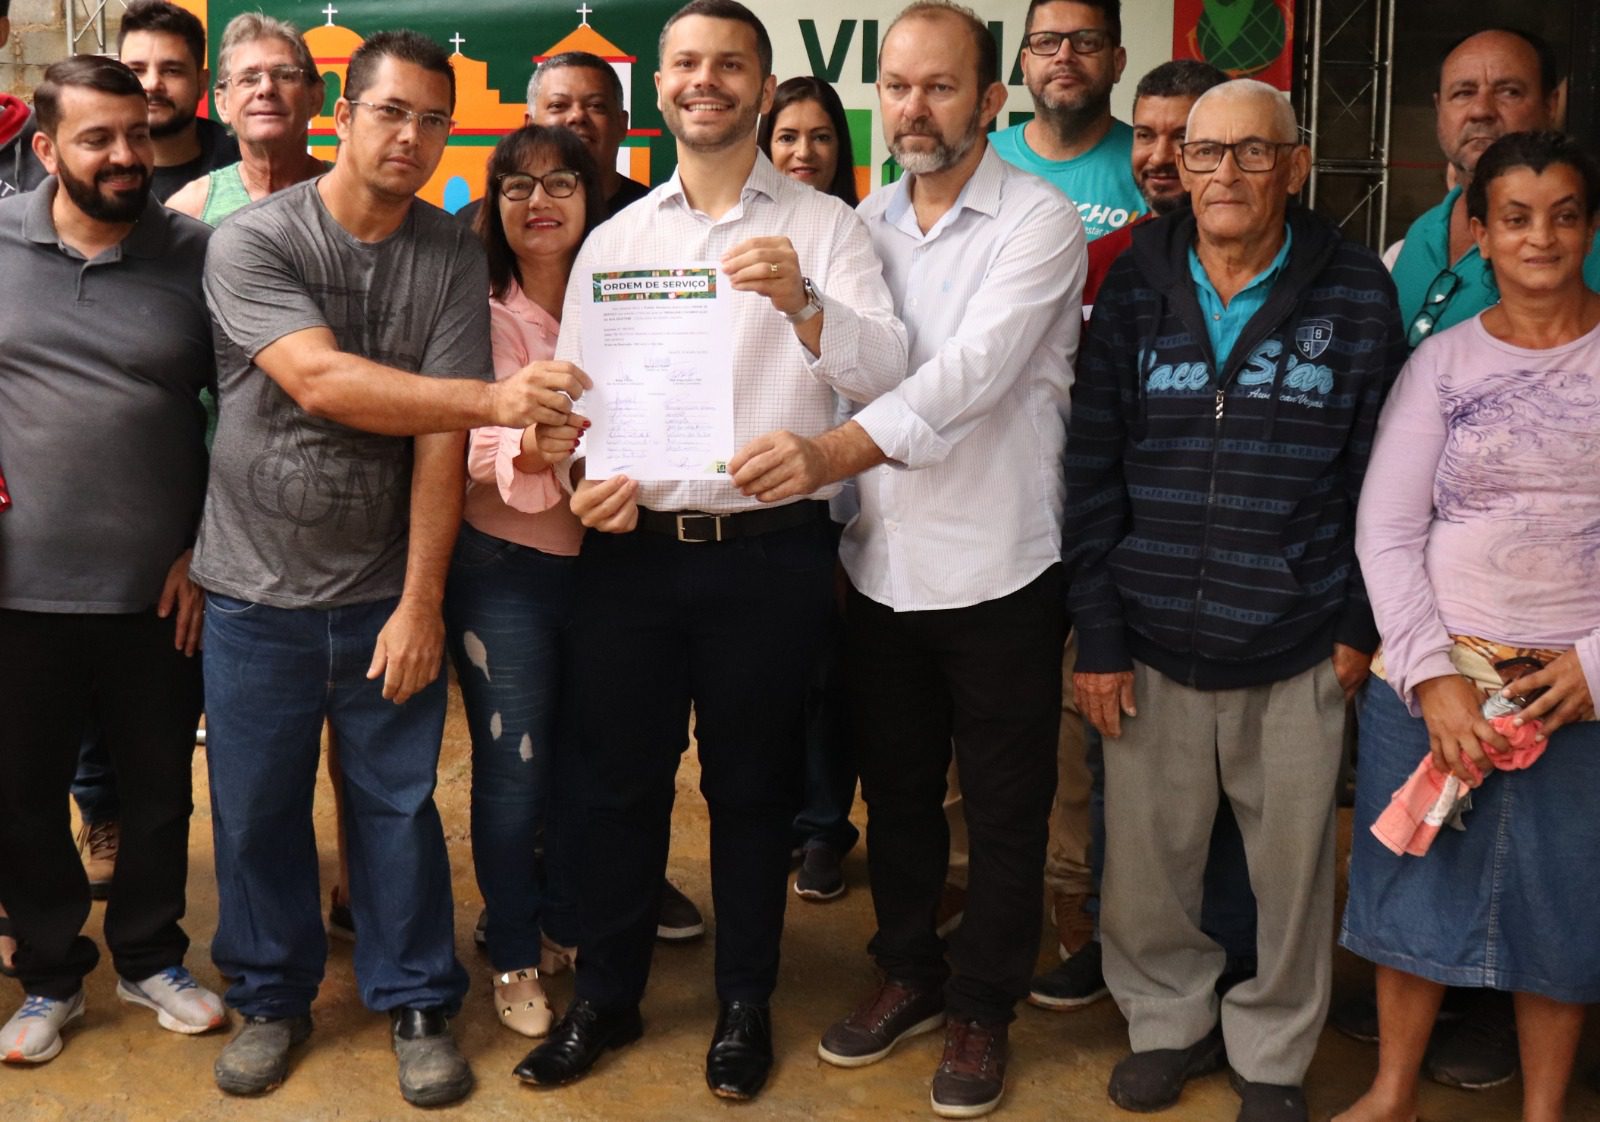 Viana avança: obras na rua Iguatemi em Areinha começam com ordem de serviço para 100% de estruturação